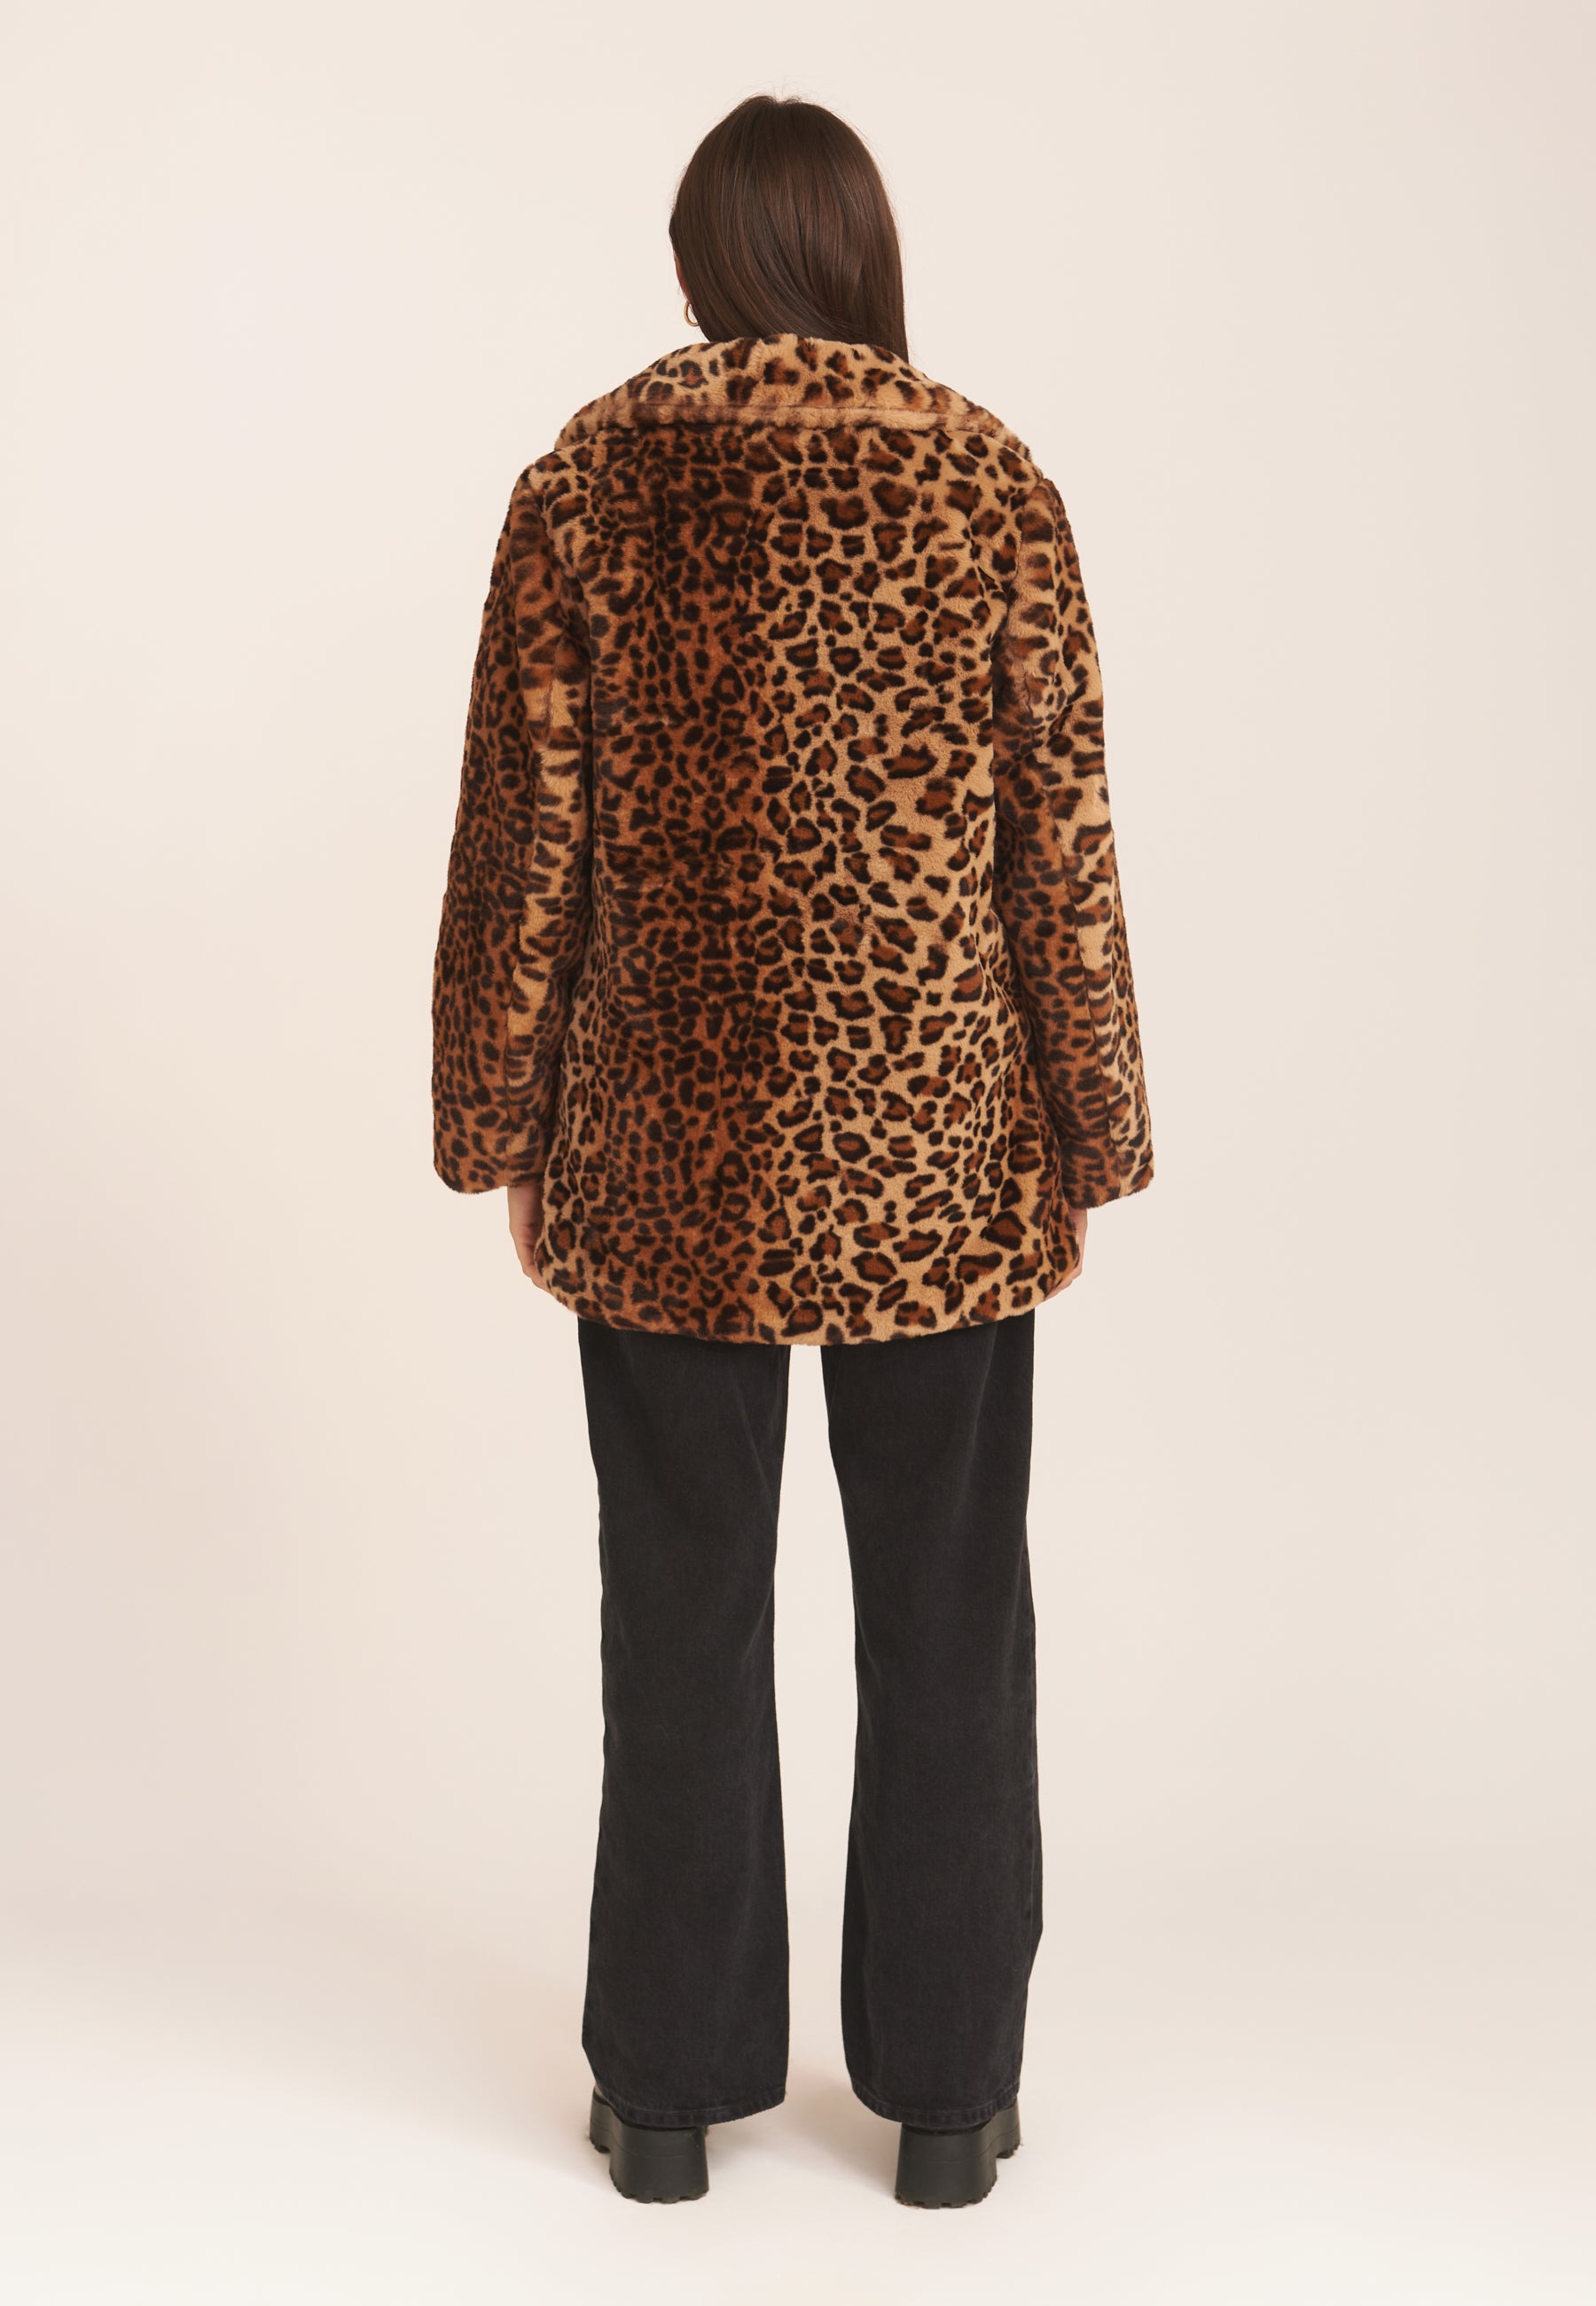 Brown Leopard Print Faux Fur Coat Jacket